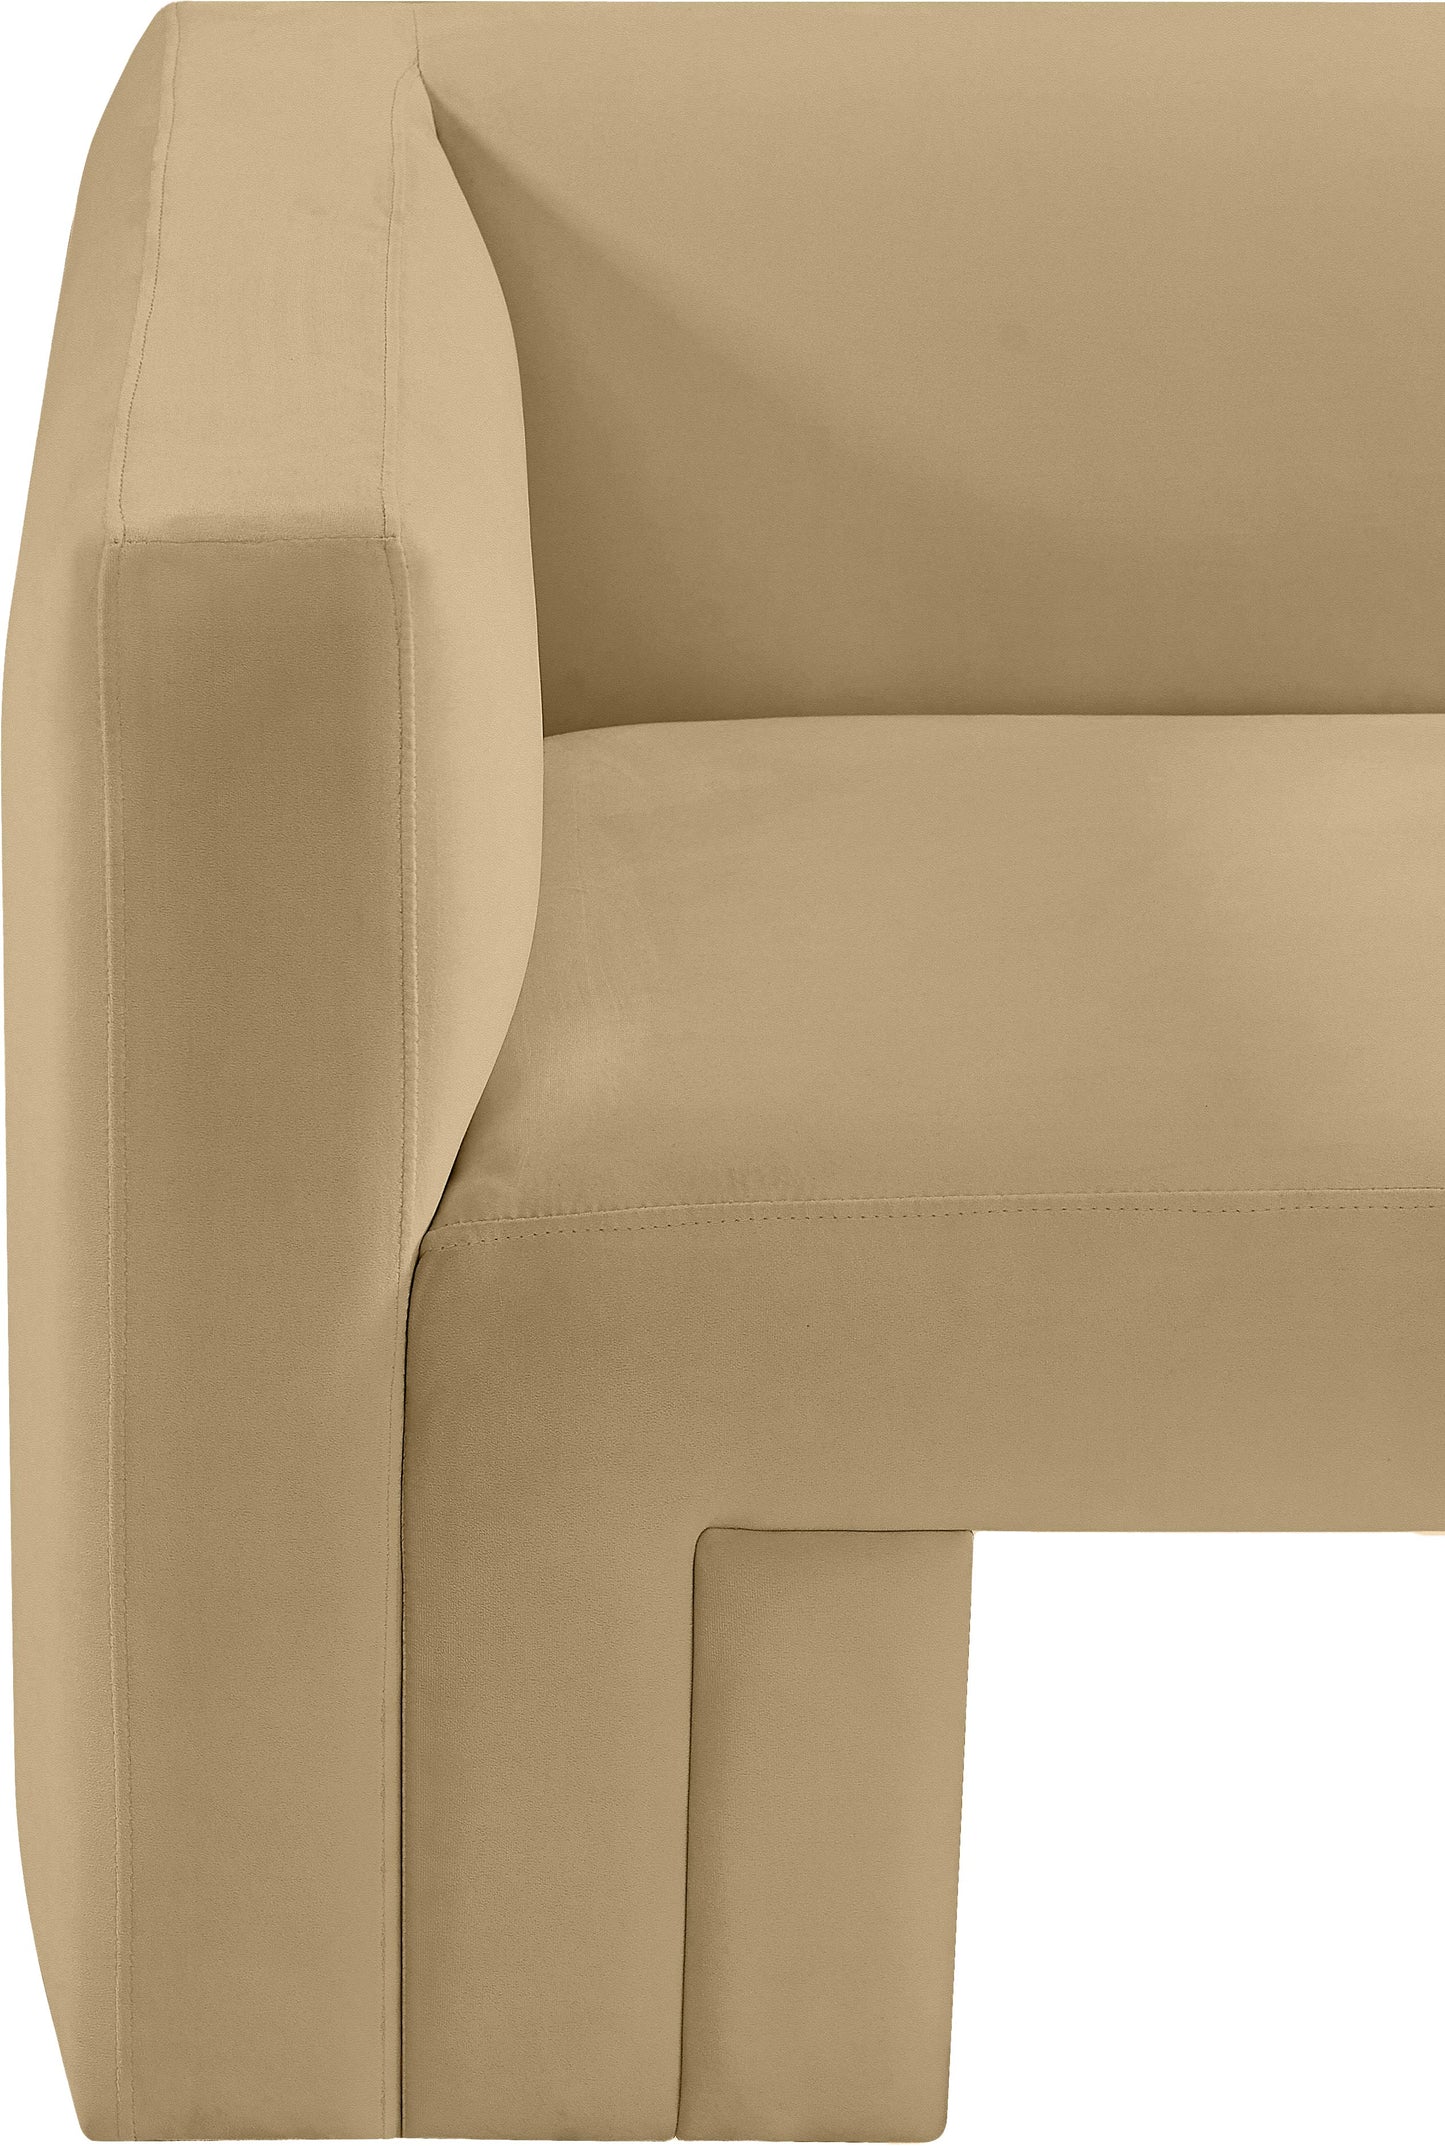 woodford camel velvet chair c